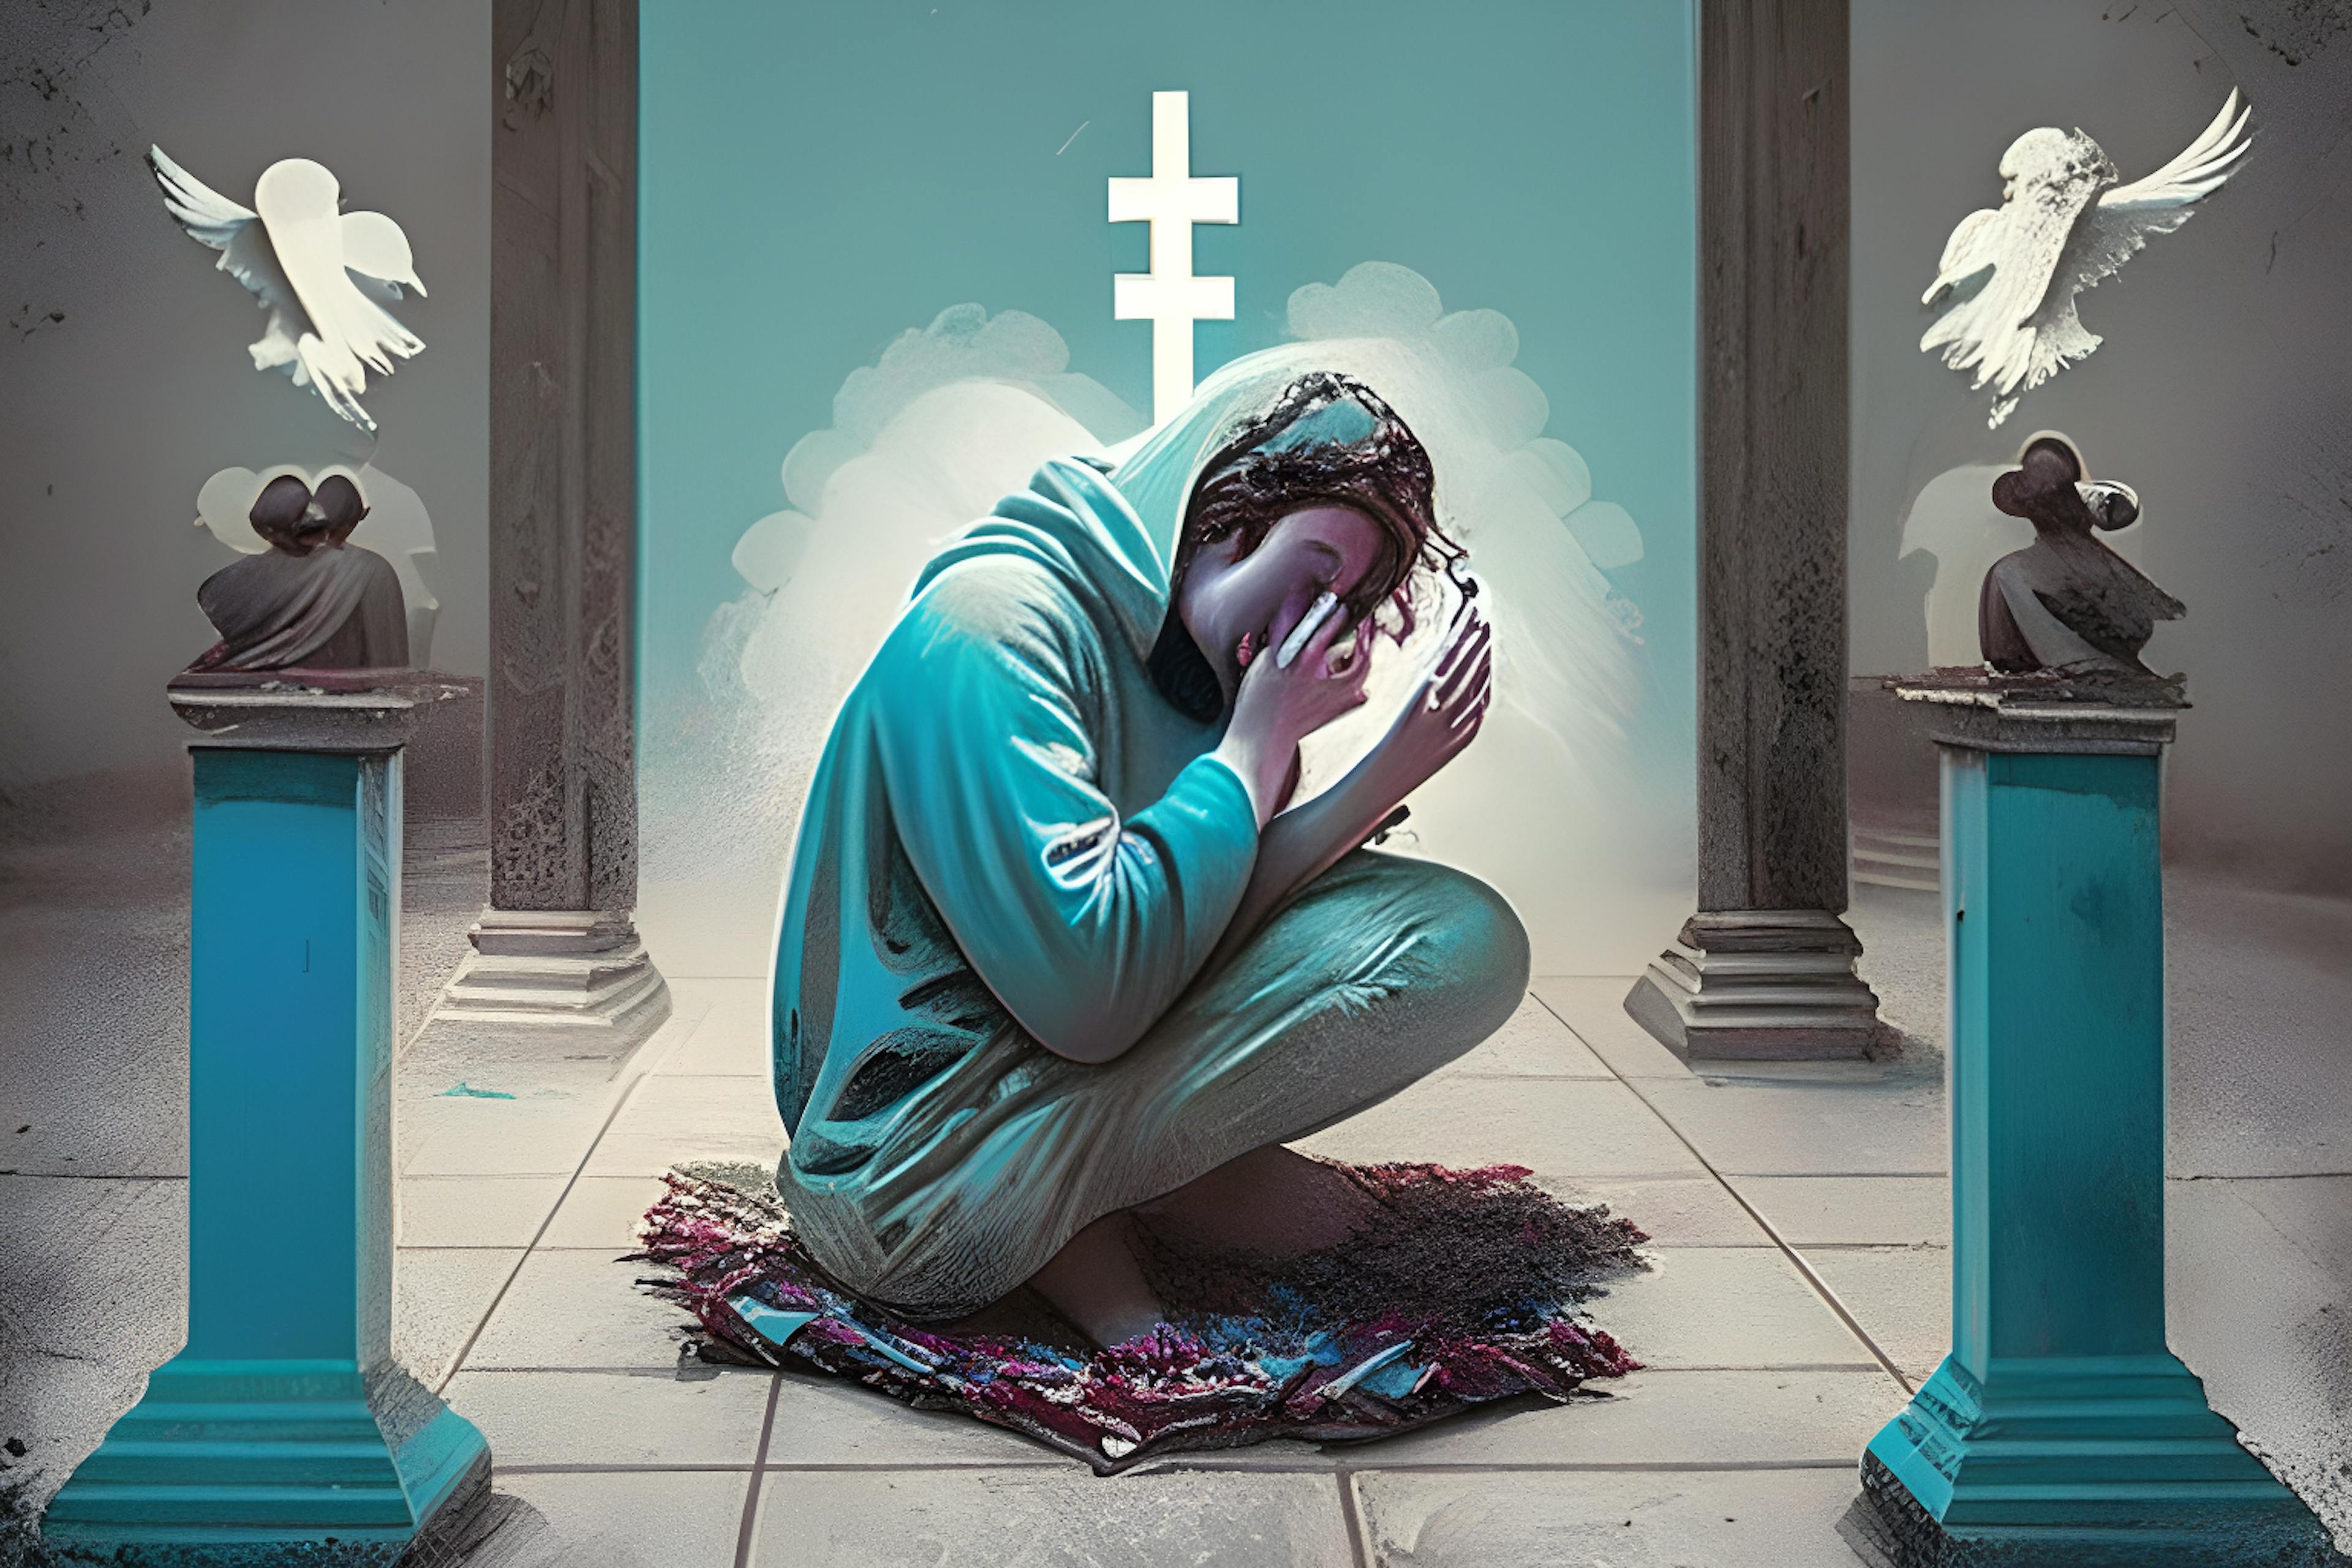 HackerNoon AI Image Generation, Prompt "Une personne accro aux médias sociaux priant les dieux"